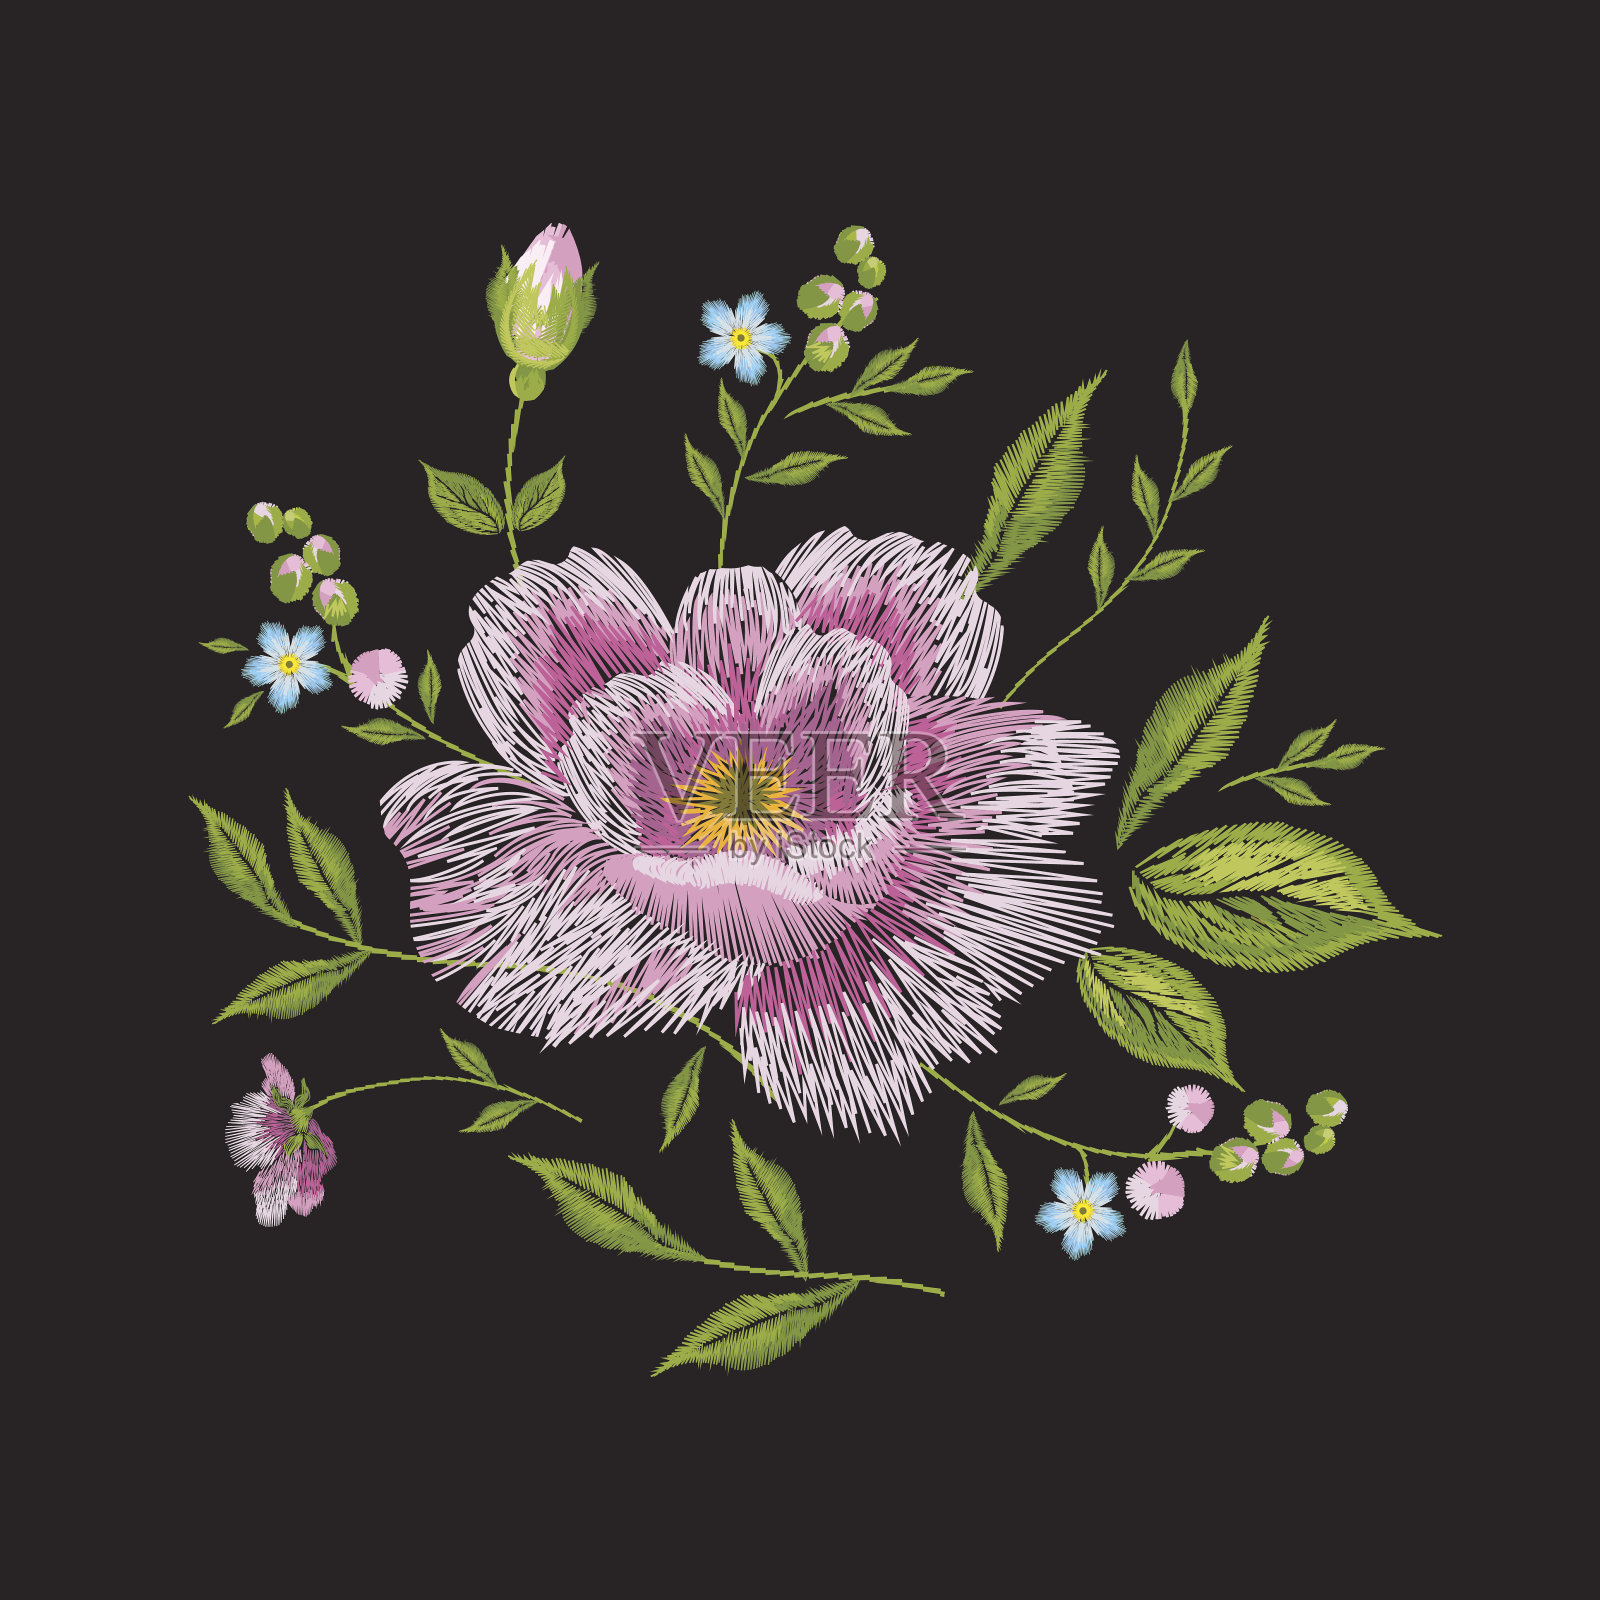 用玫瑰绣出五彩缤纷的花卉图案。插画图片素材